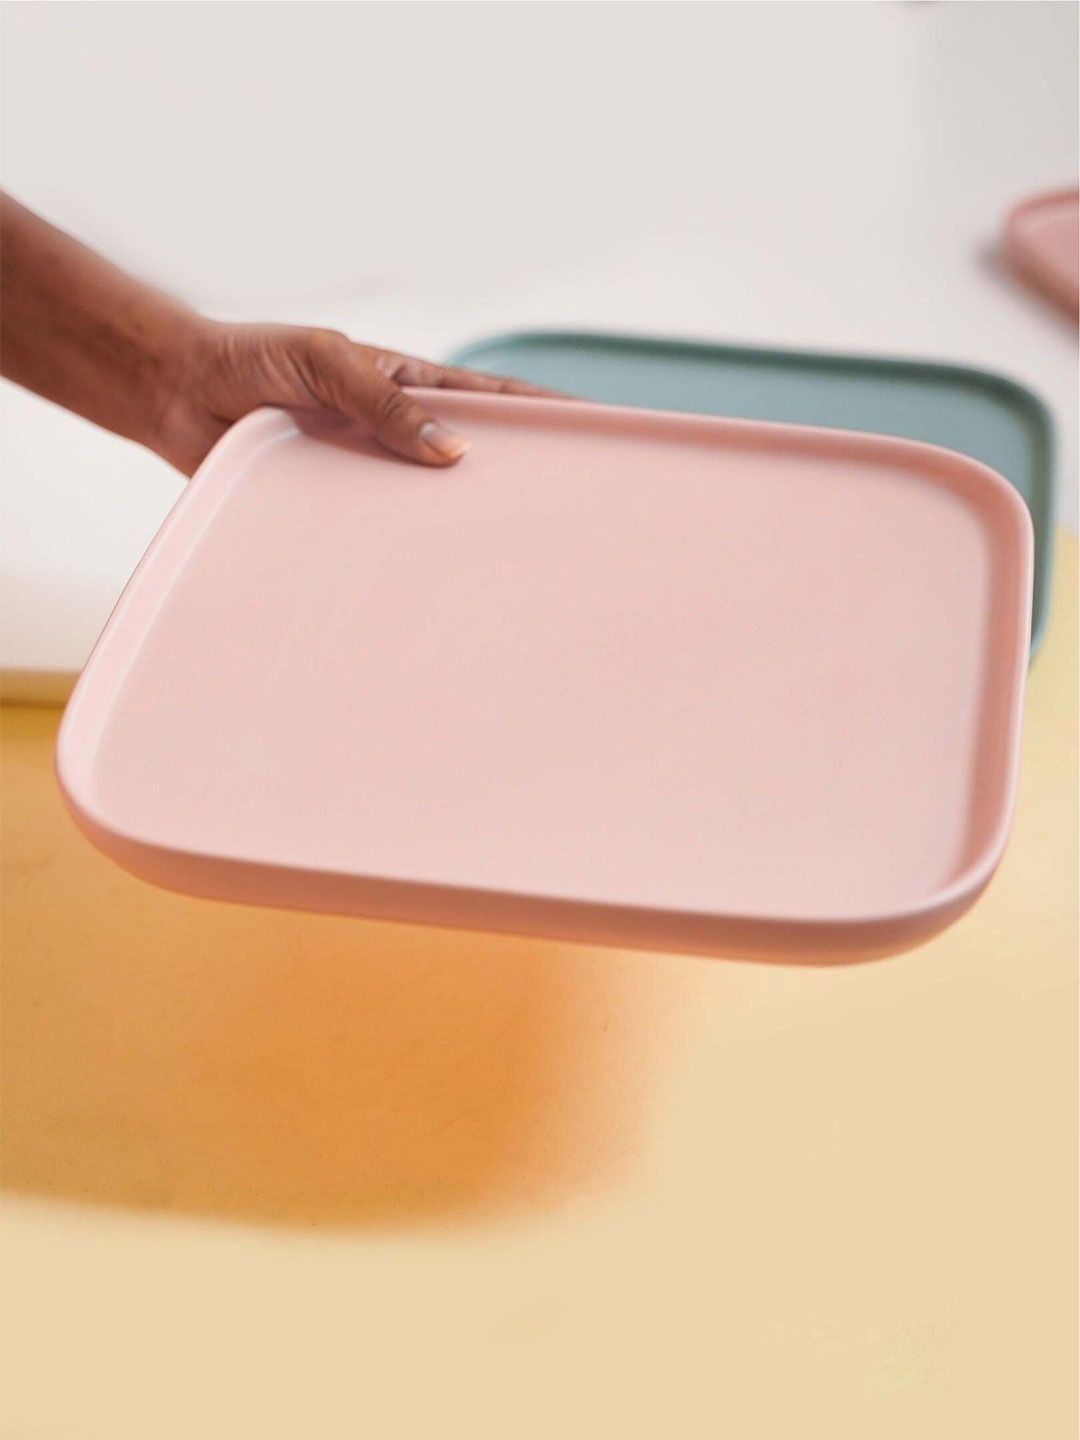 Nestasia Pink Ceramic Square Ceramic Dinner Plate Price in India